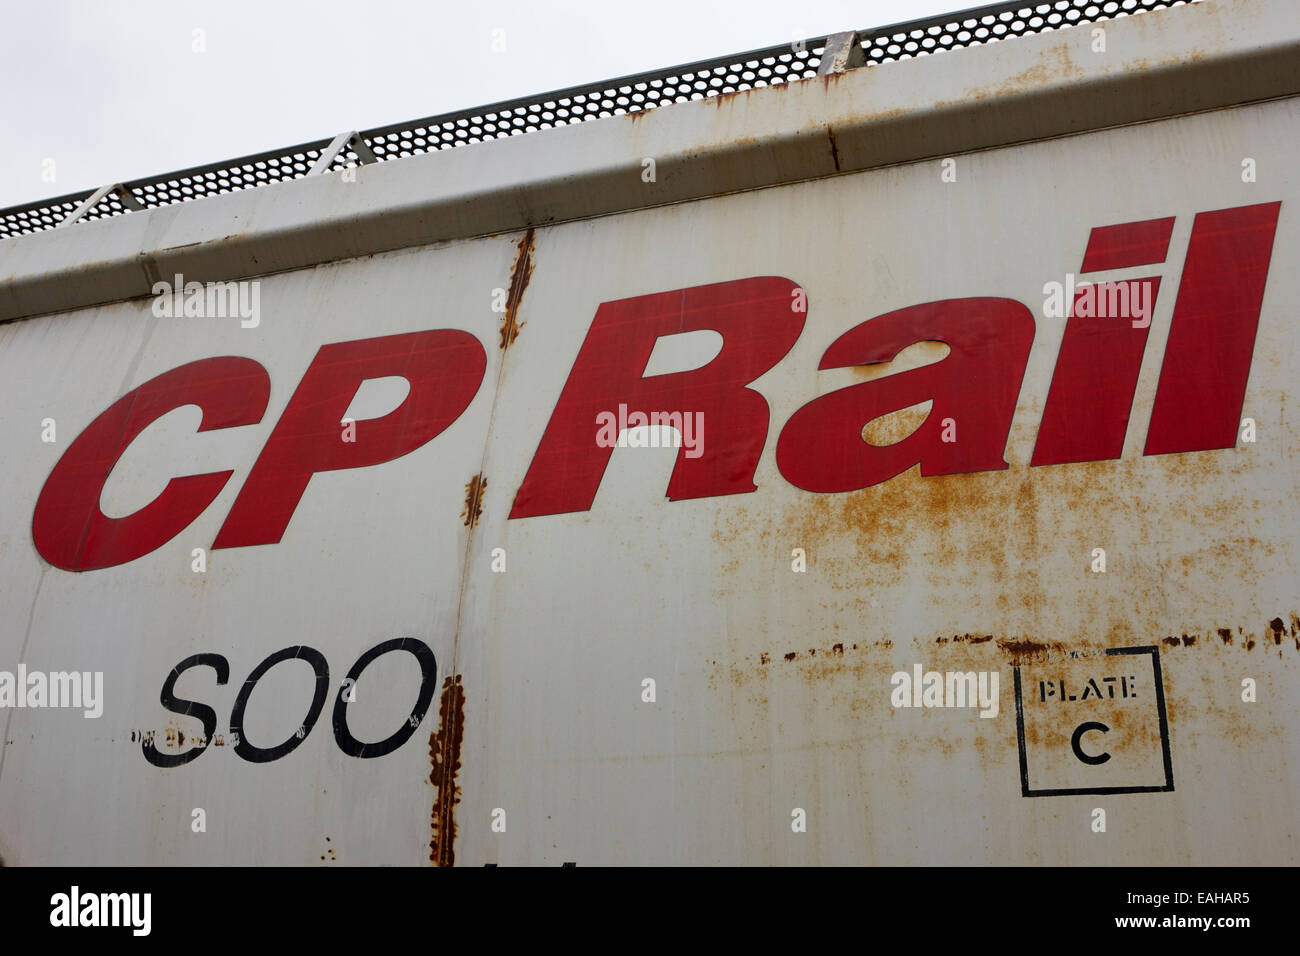 CP Rail freight camions de grain sur l'ancien chemin de fer Canadien Pacifique Canada Saskatchewan Banque D'Images